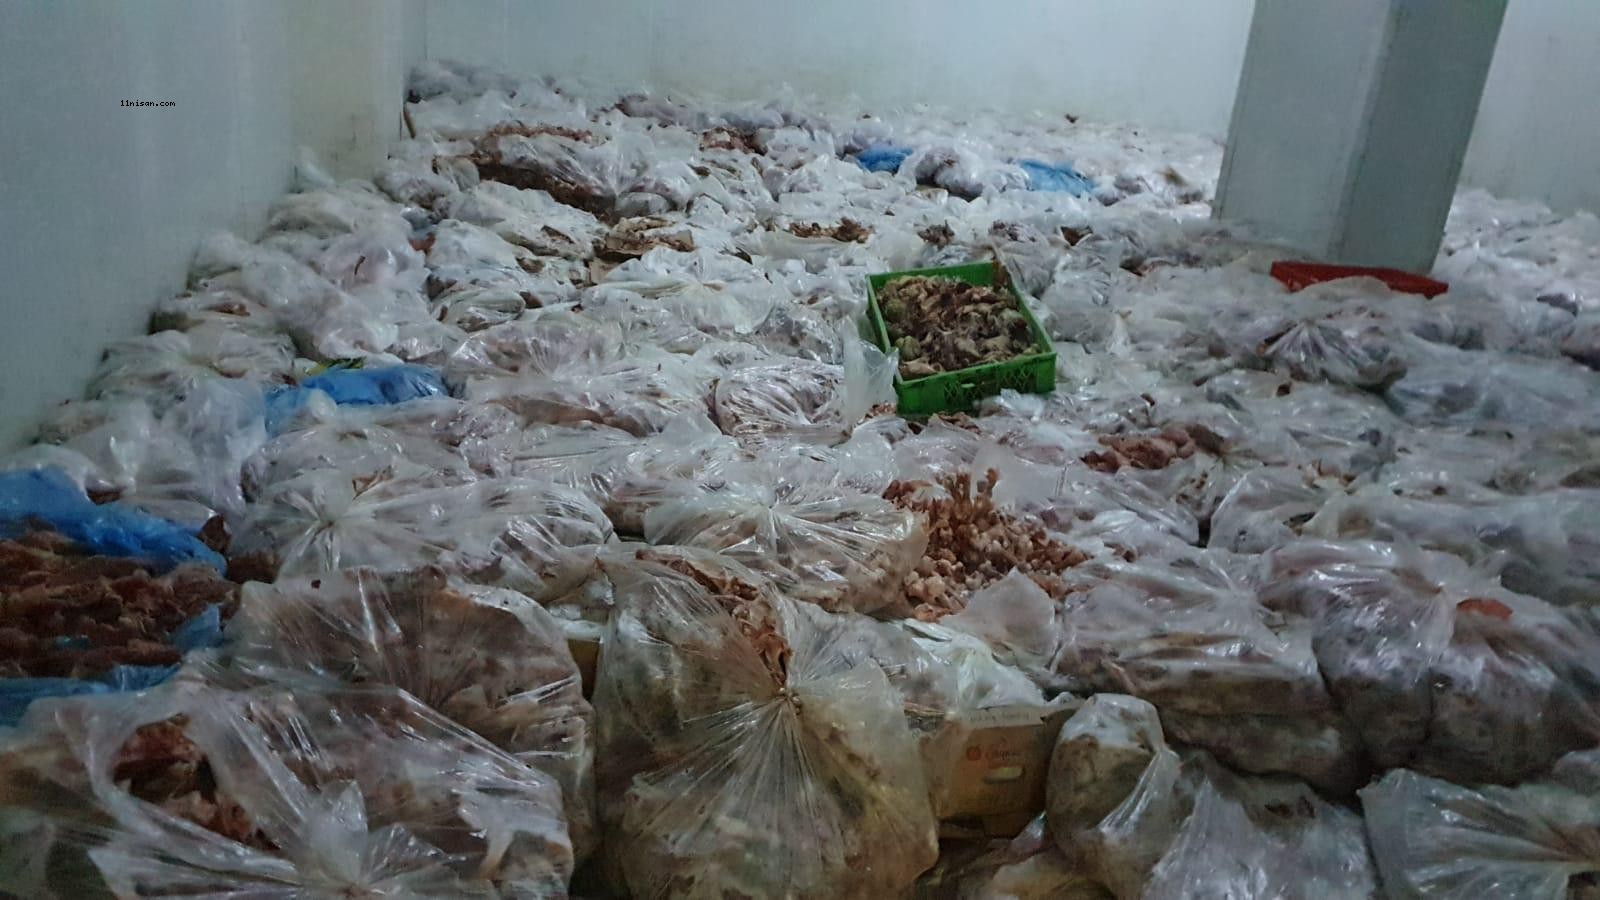 Şanlıurfa’da bir depoda 10 ton bozuk tavuk ele geçirildi!;